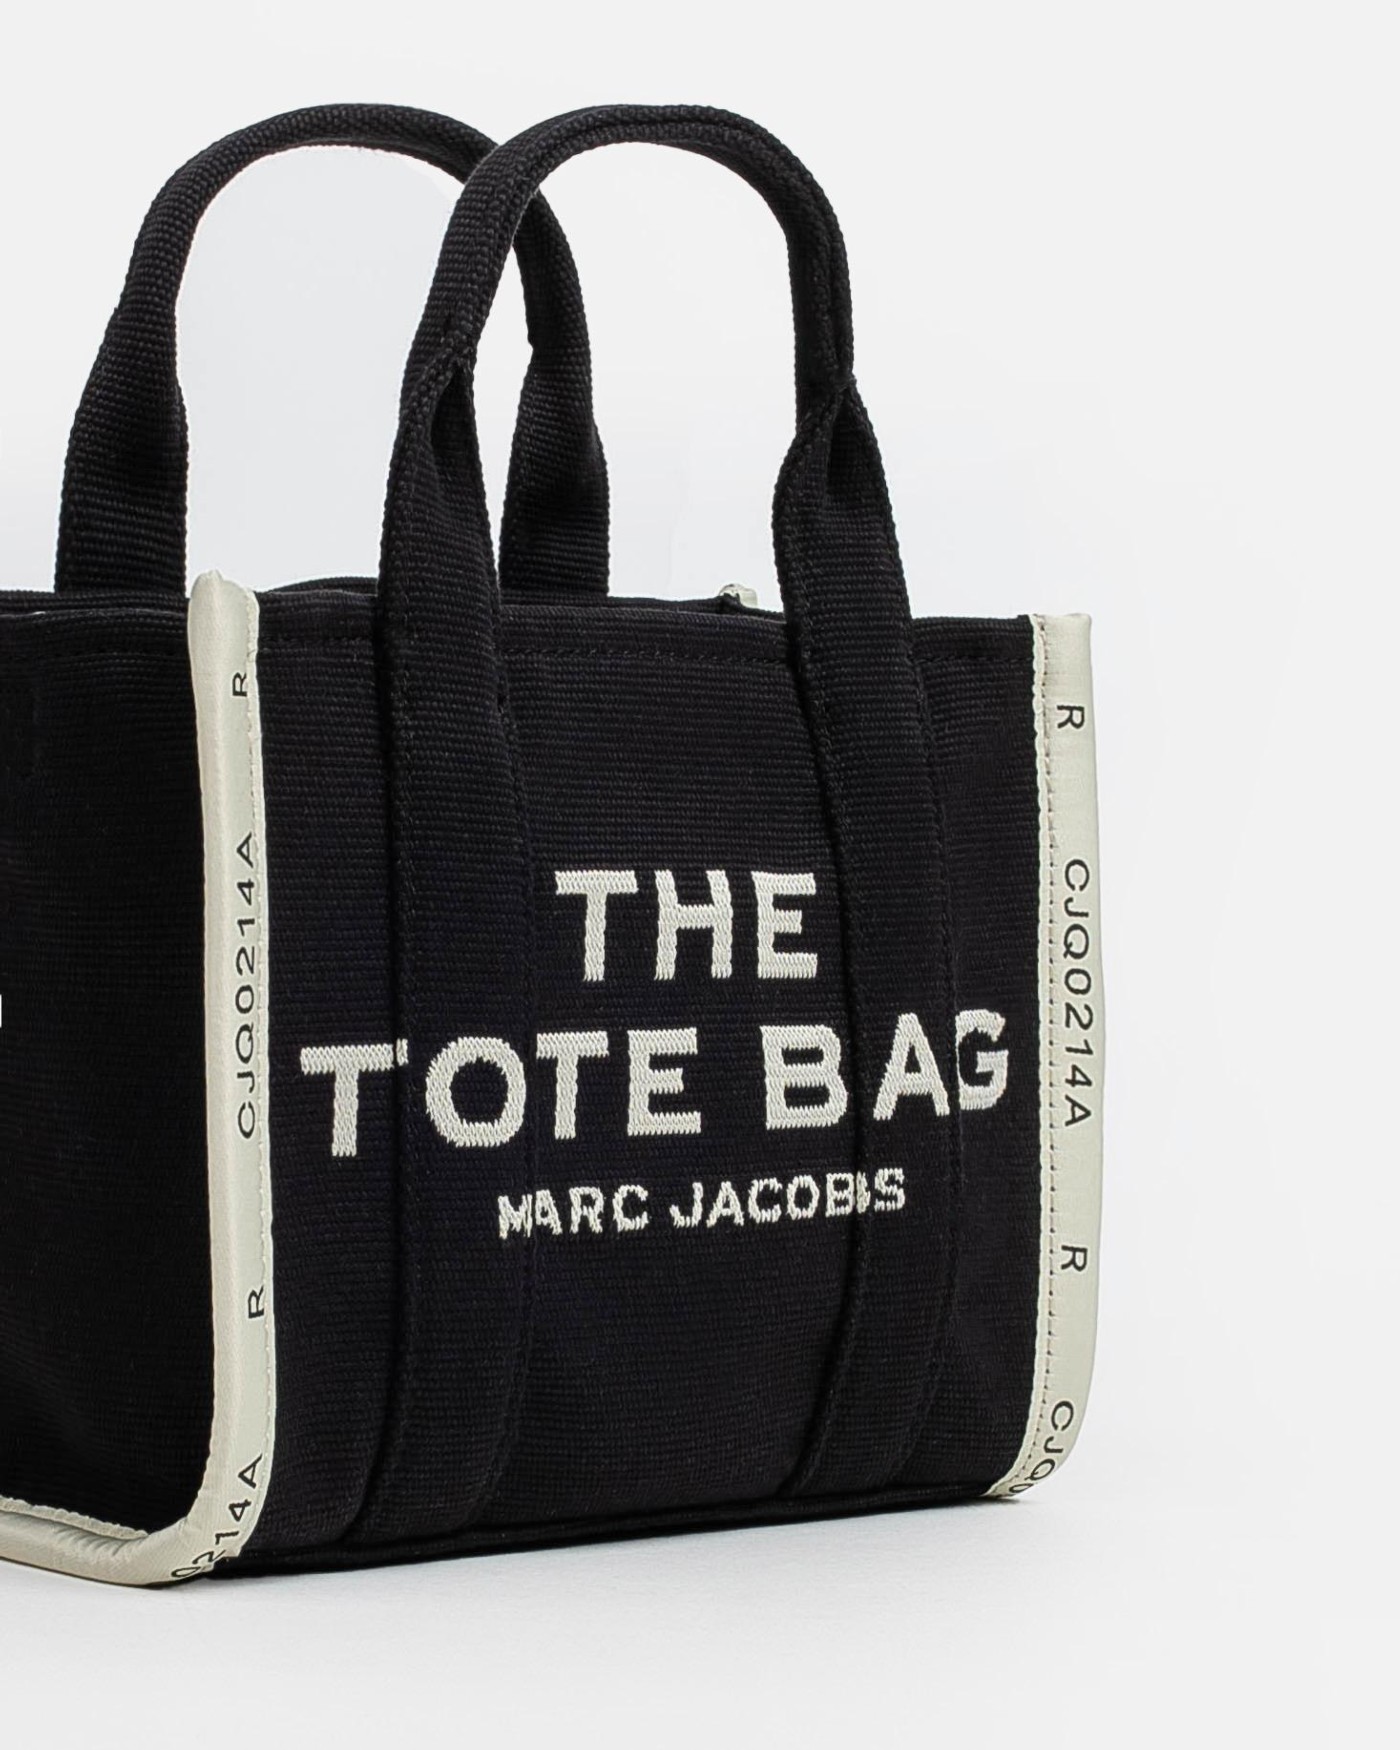 marc-jacobs-bolso-the-jacquard-mini-tote-bag-black-negro-4